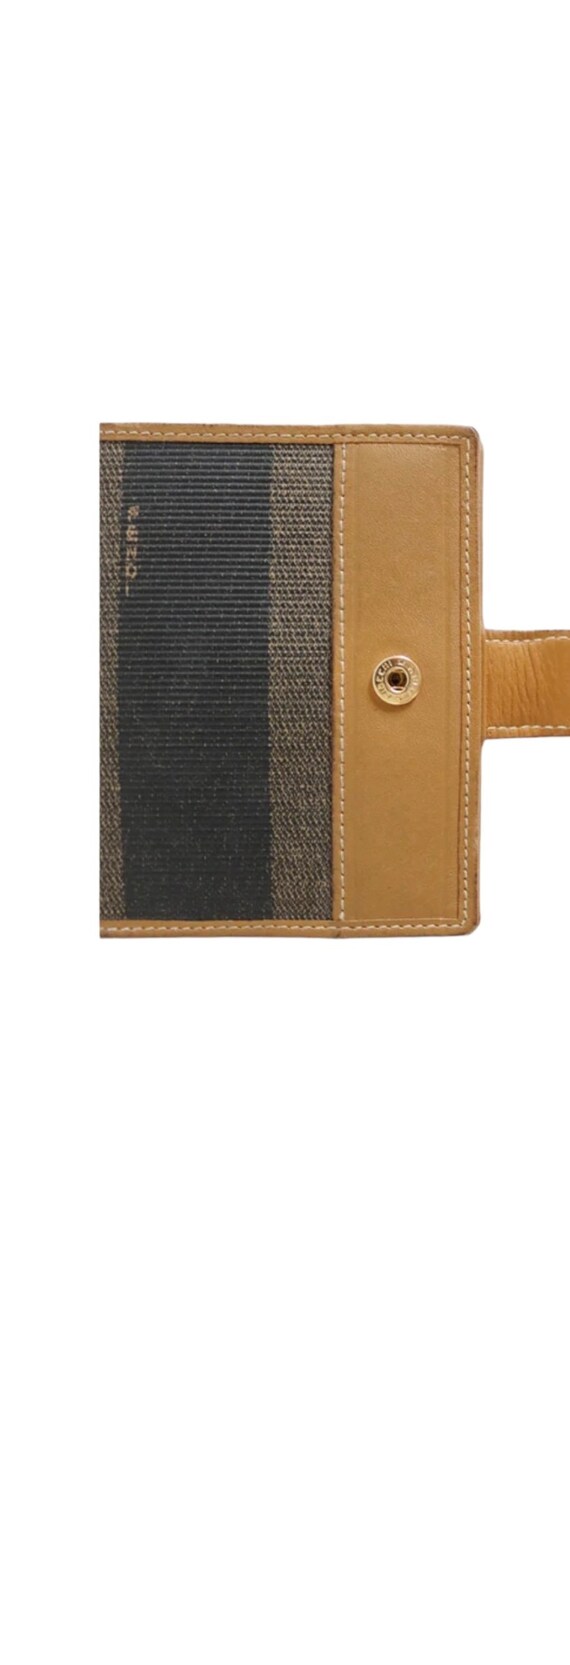 Mens FENDI Wallet. New Vintage Cardholder. Leathe… - image 4